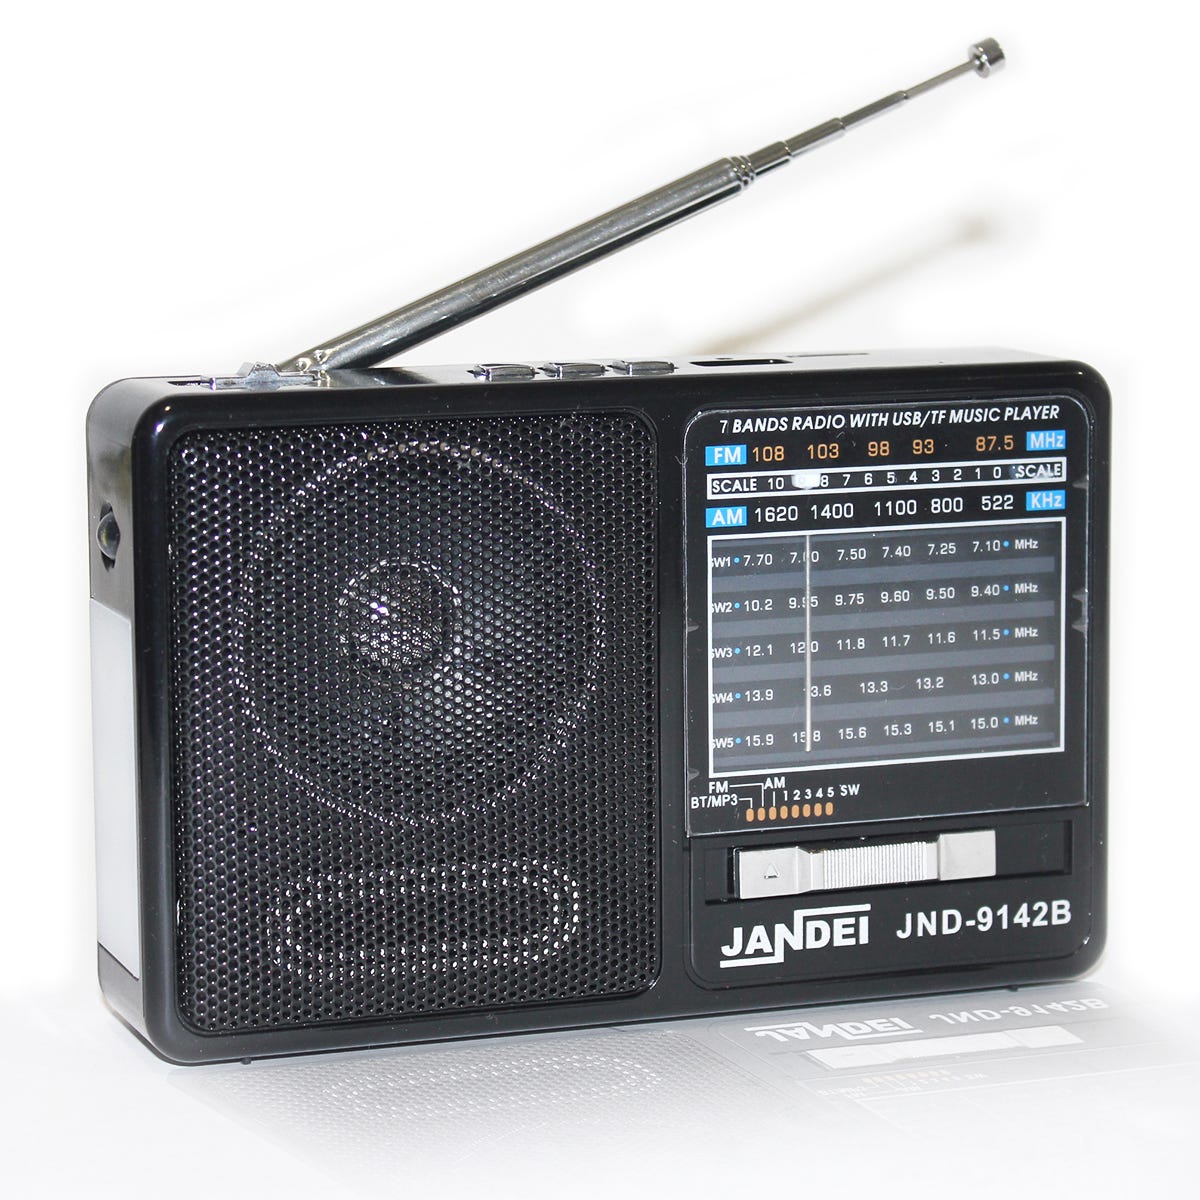 Radio avec batterie rechargeable, Bluetooth, FM/Am/SW1-5, avec lampe de  poche, câble de chargement USB inclus